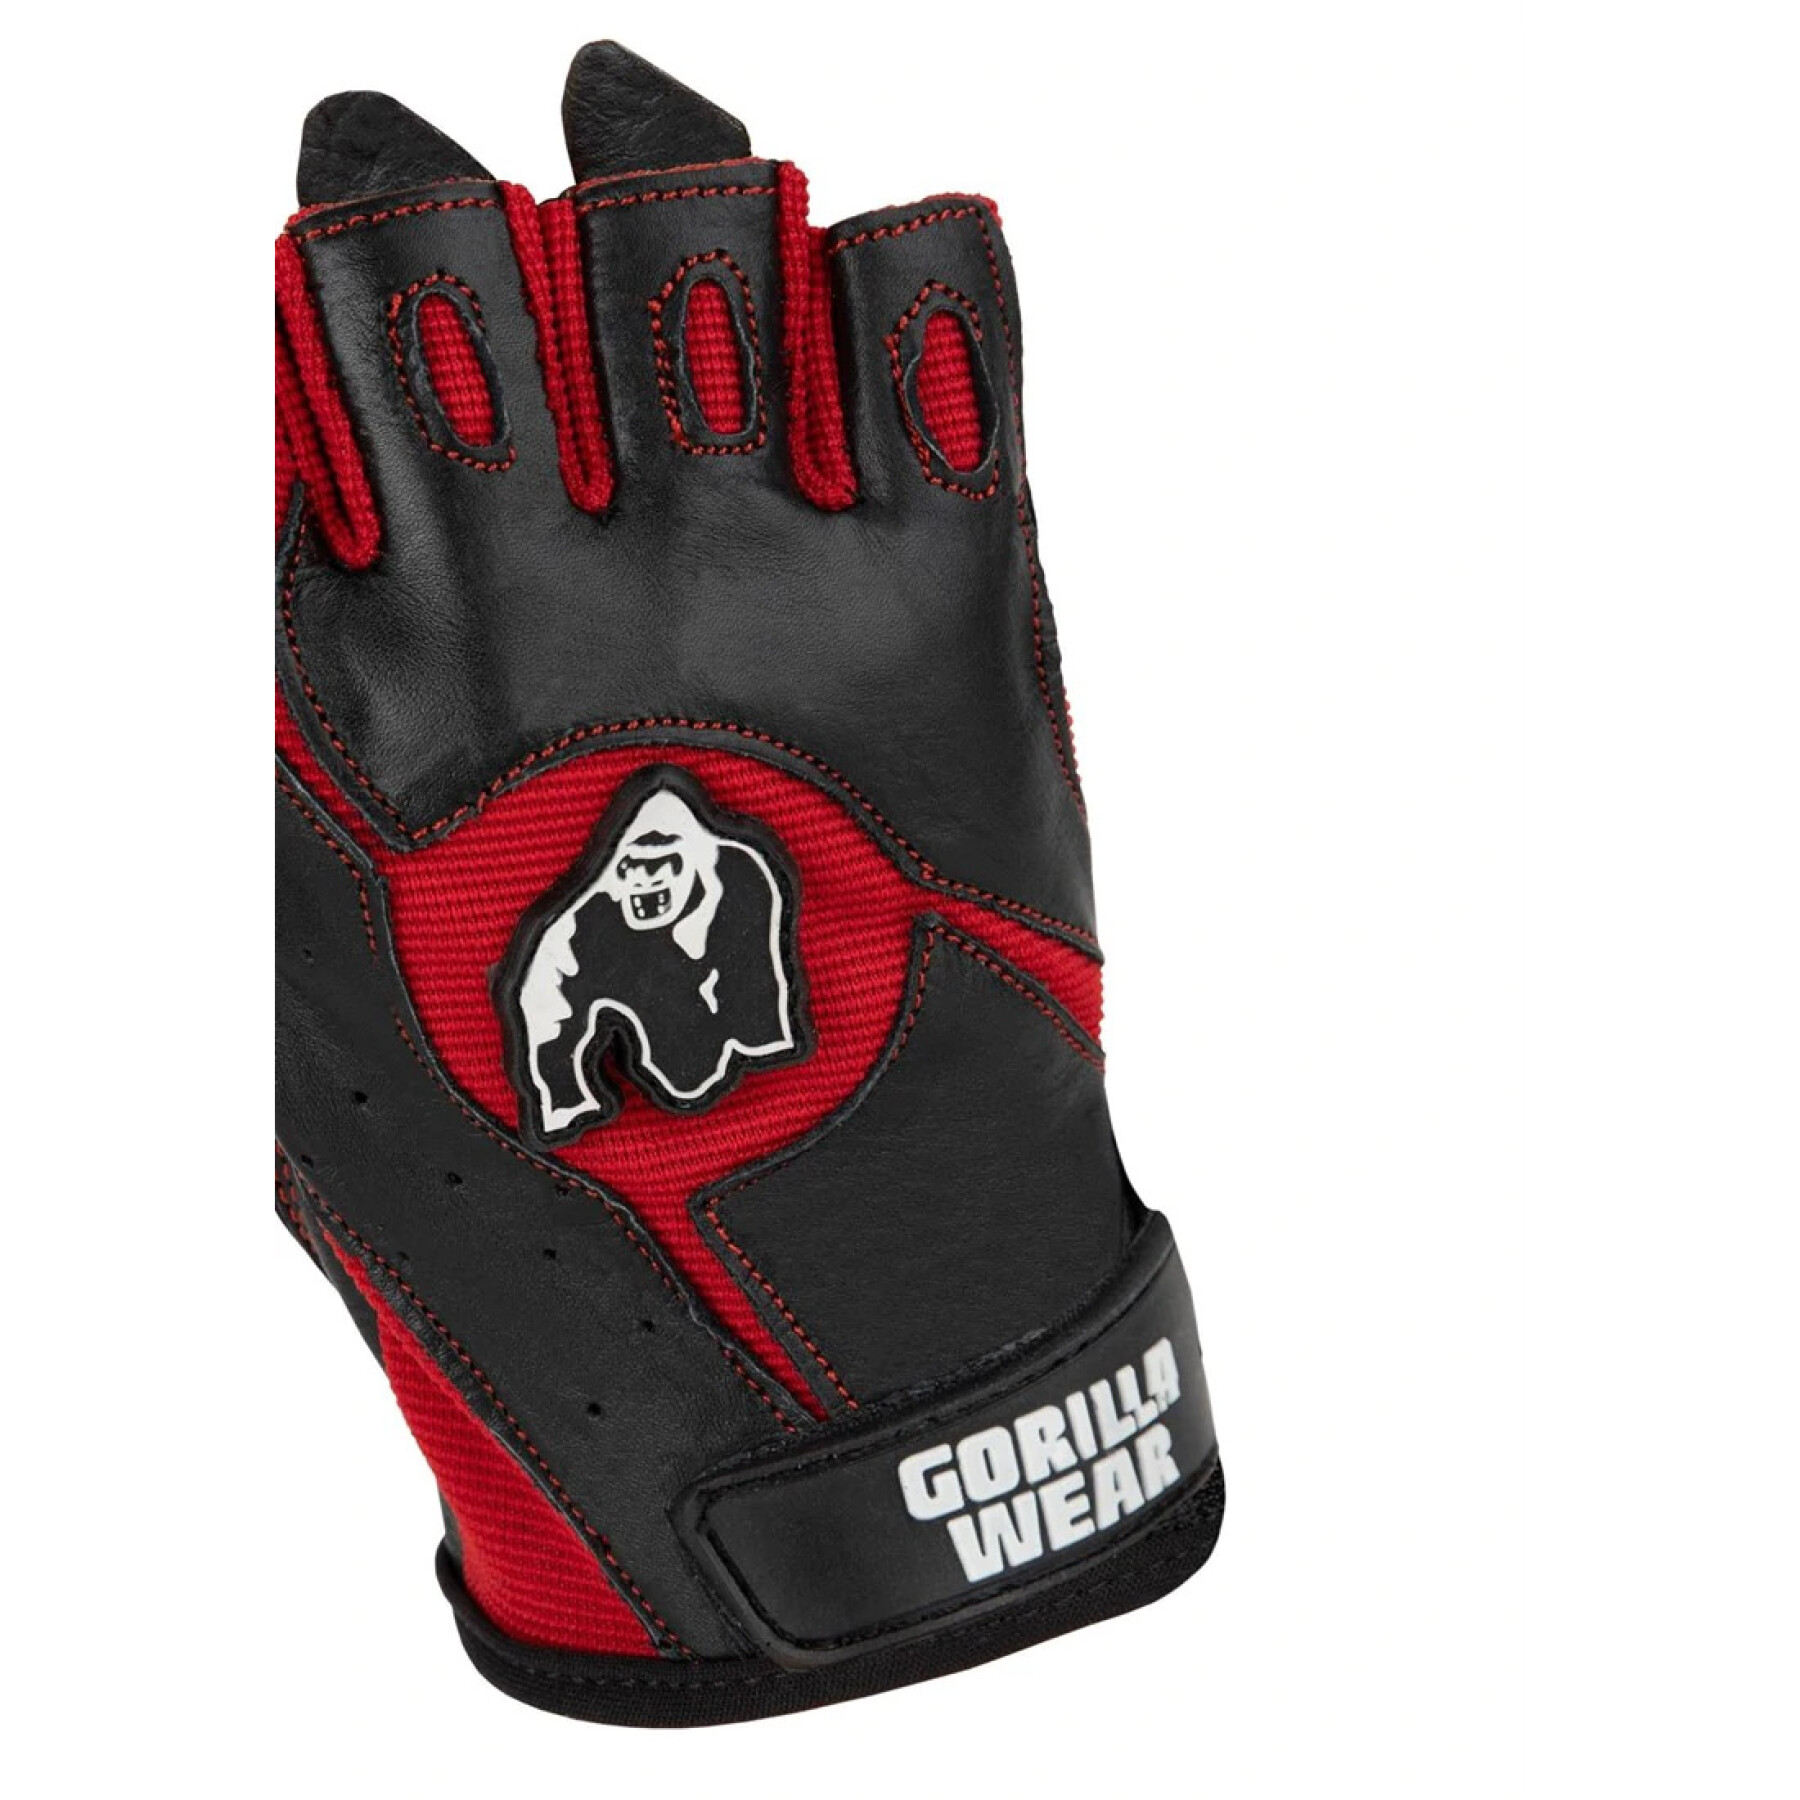 Training gloves Gorilla Wear Mitchell